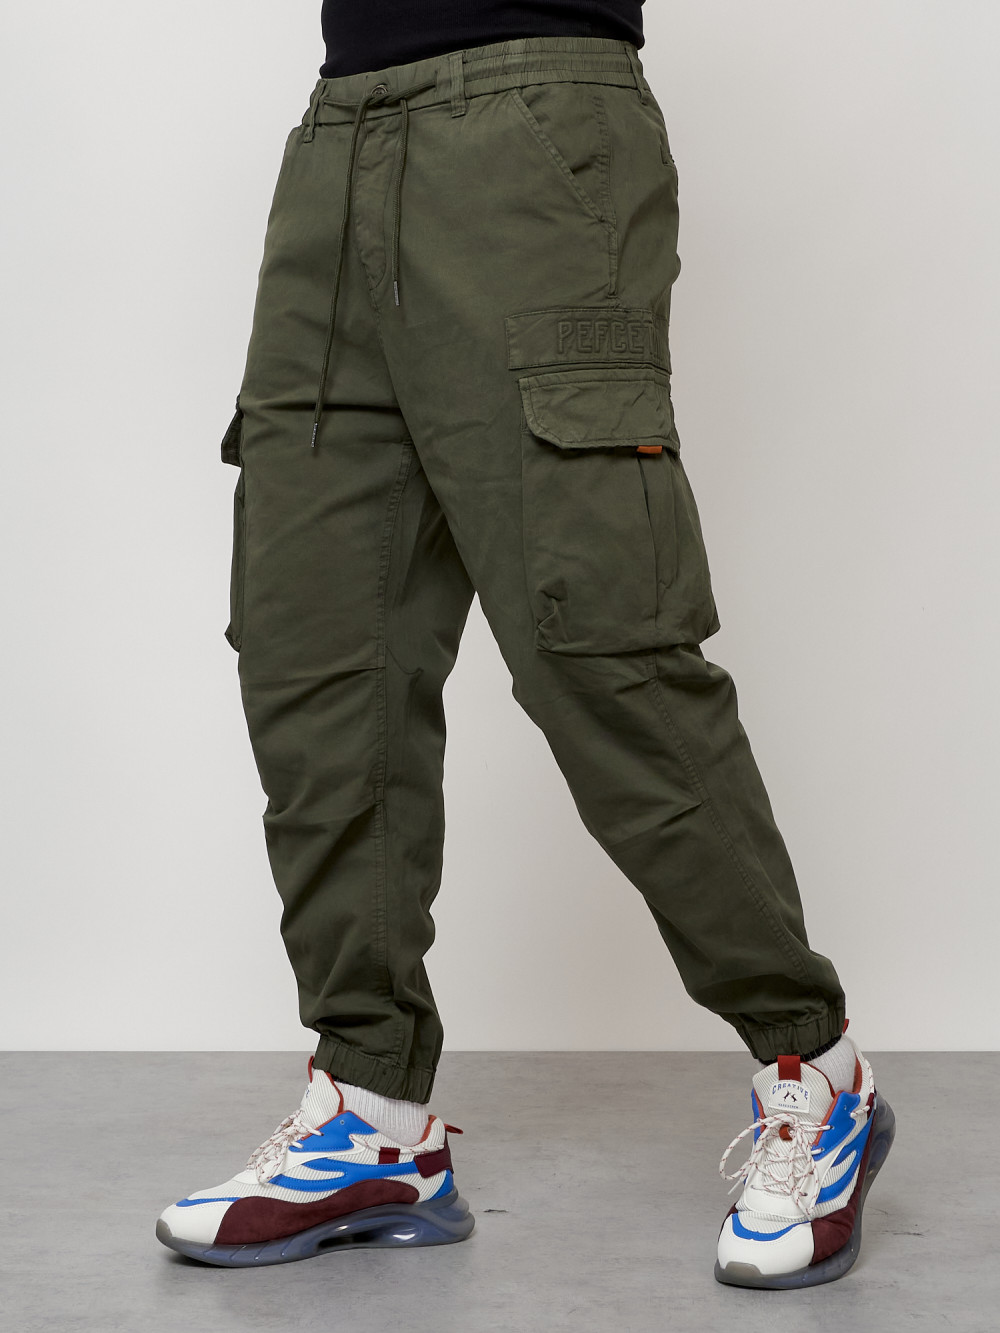 Джинсы карго мужские с накладными карманами цвета хаки 2428Kh